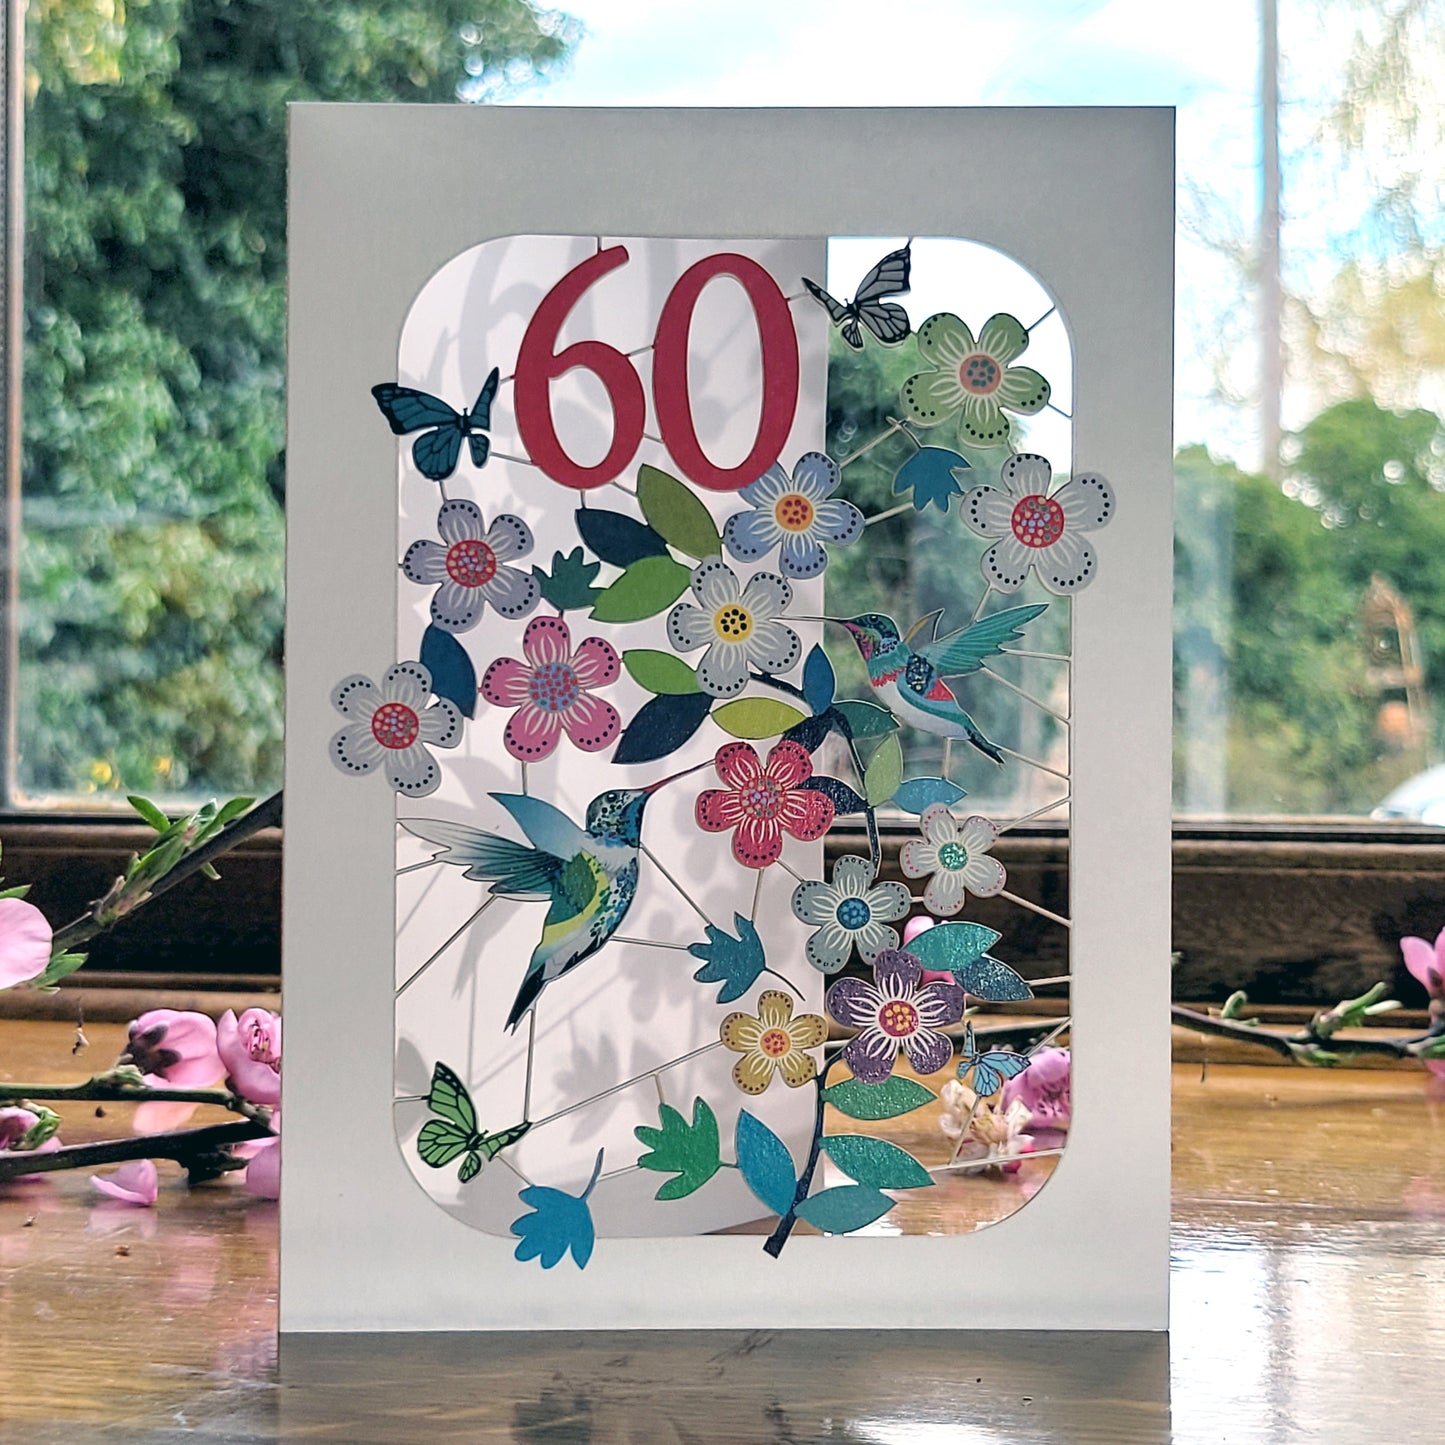 Age 60 Birthday Card, 60th Birthday Card, Humming Bird Card - GF060